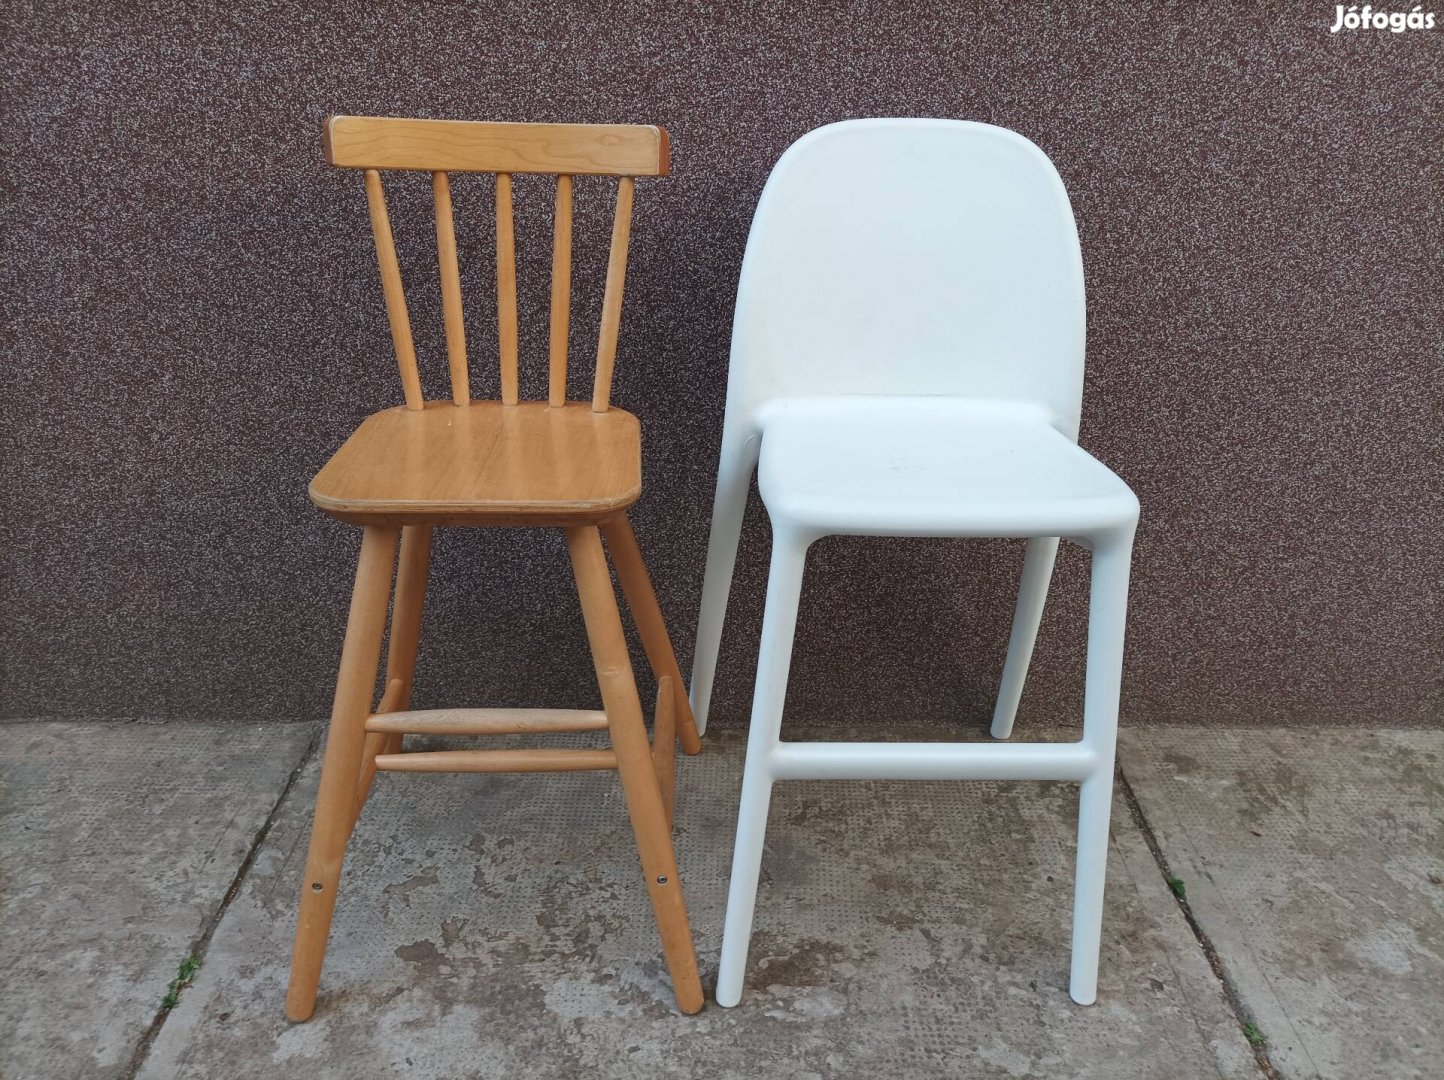 Ikea-s gyerek székek 2 db, Agam és Urban szék